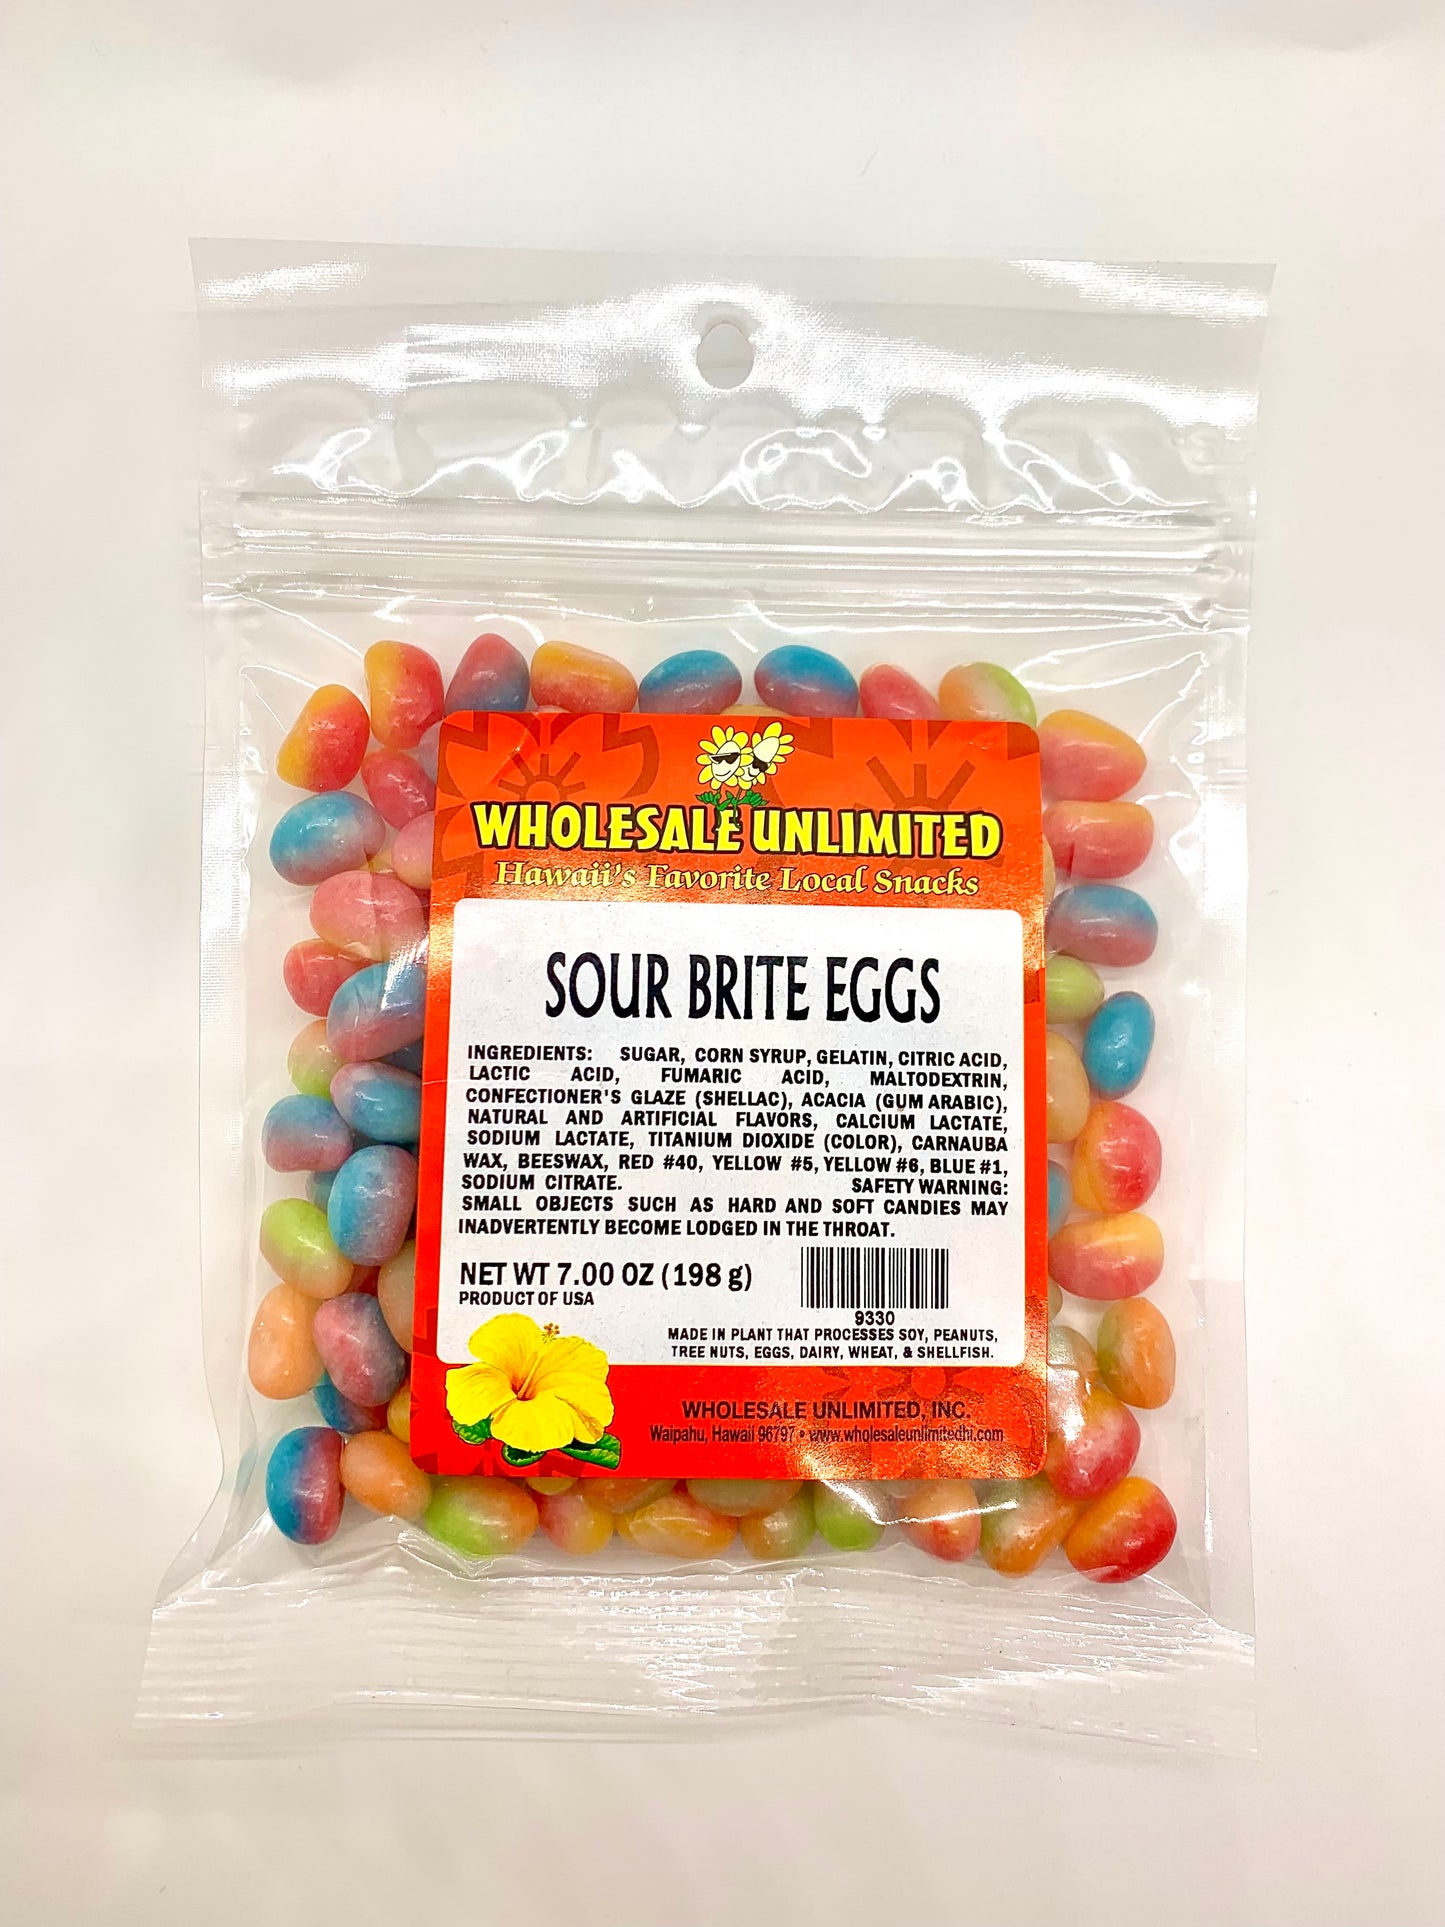 (NEW) Sour Brite Eggs - Wholesale Unlimited Inc.